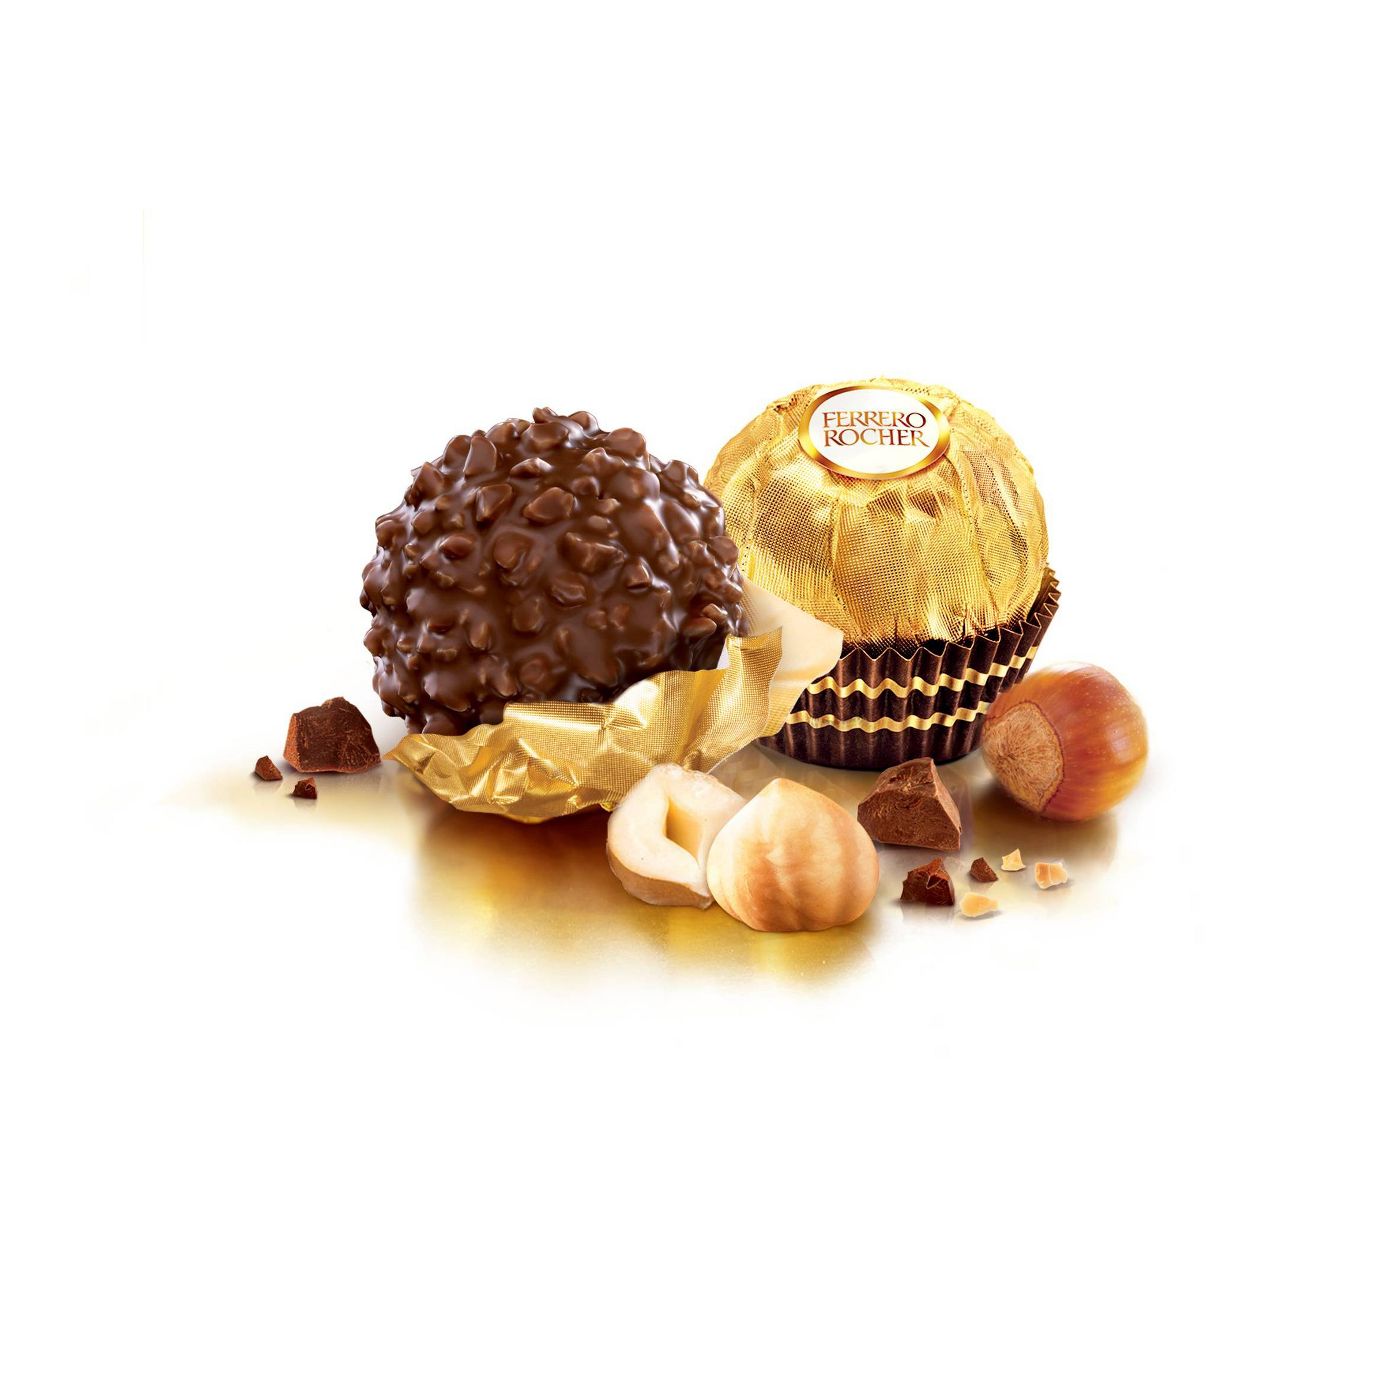 Ferrero Rocher Valentine's Day Fine Hazelnut Chocolates - 7oz